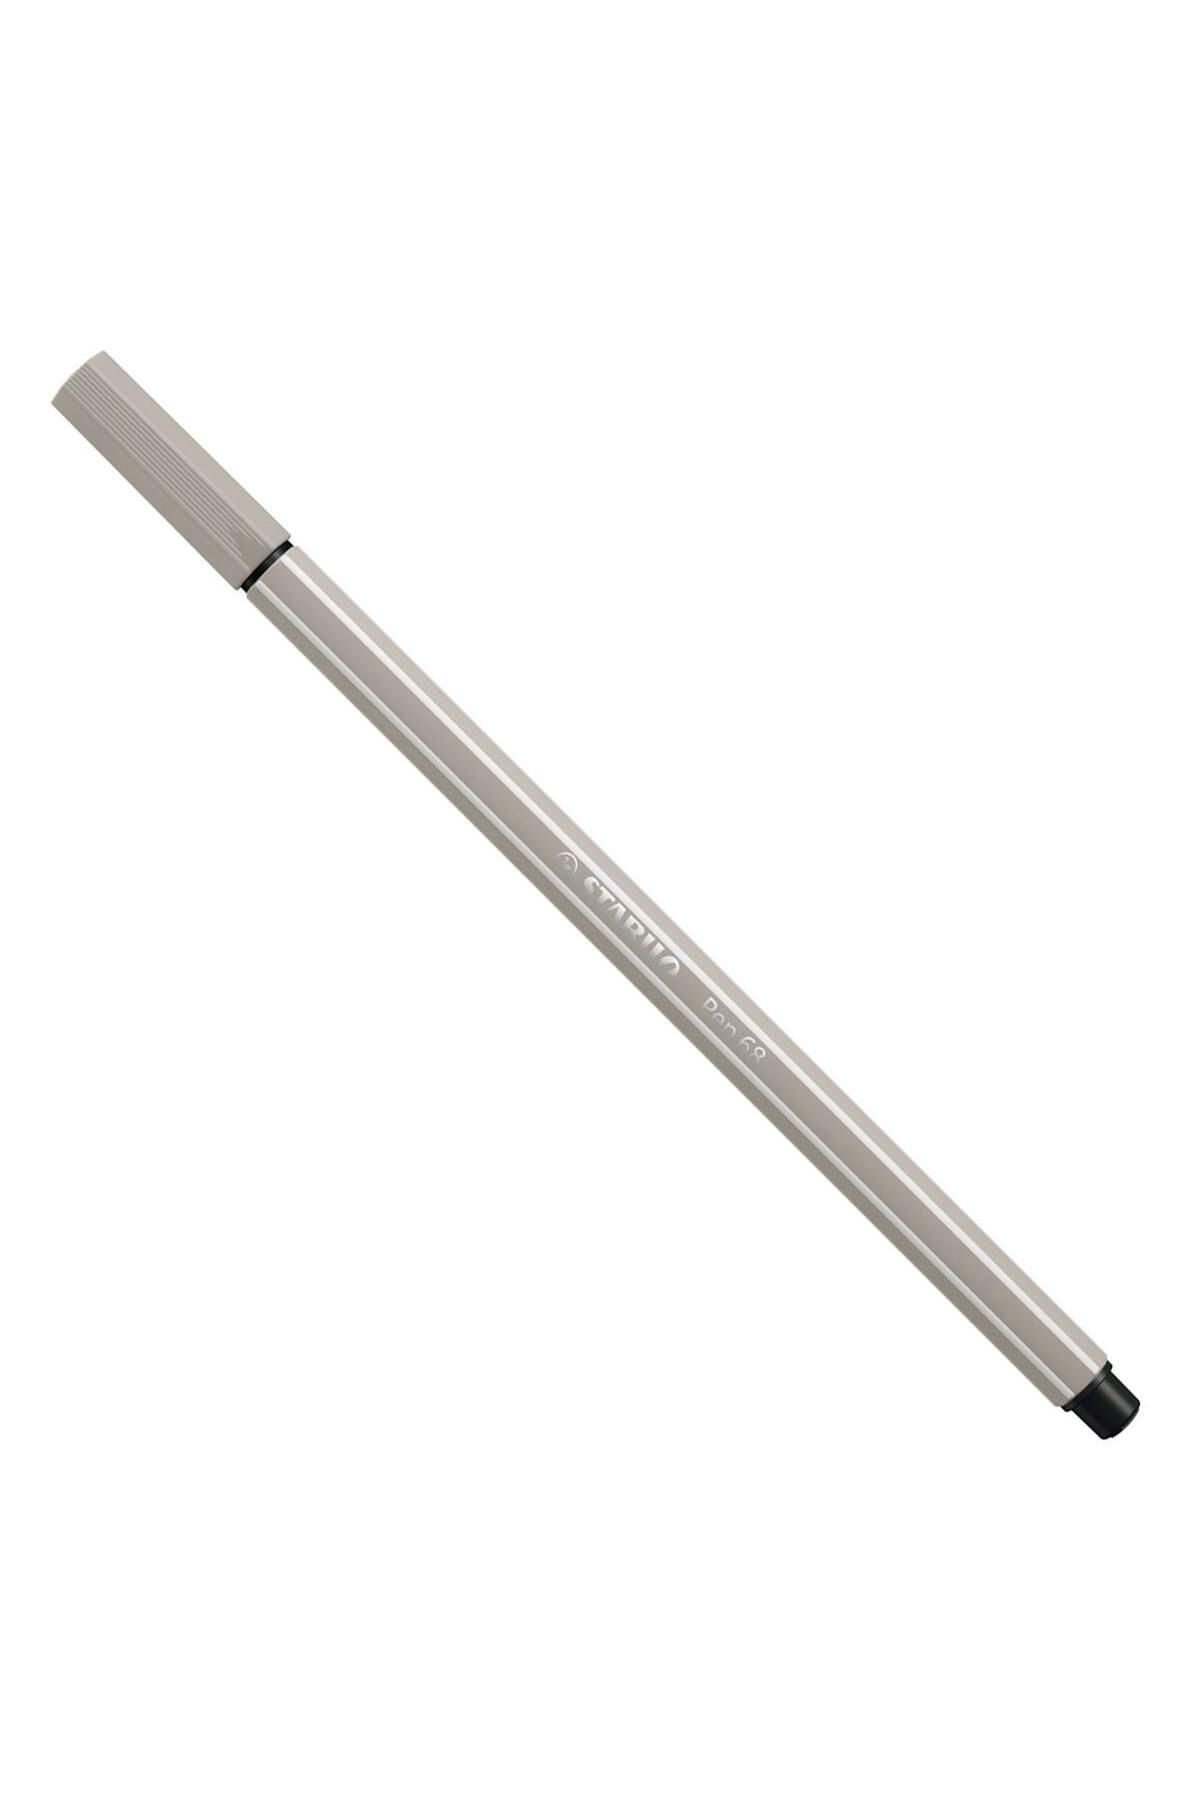 Stabilo Pen 68 Keçeli Kalem Sıcak Gri 68/93 (10 LU PAKET)